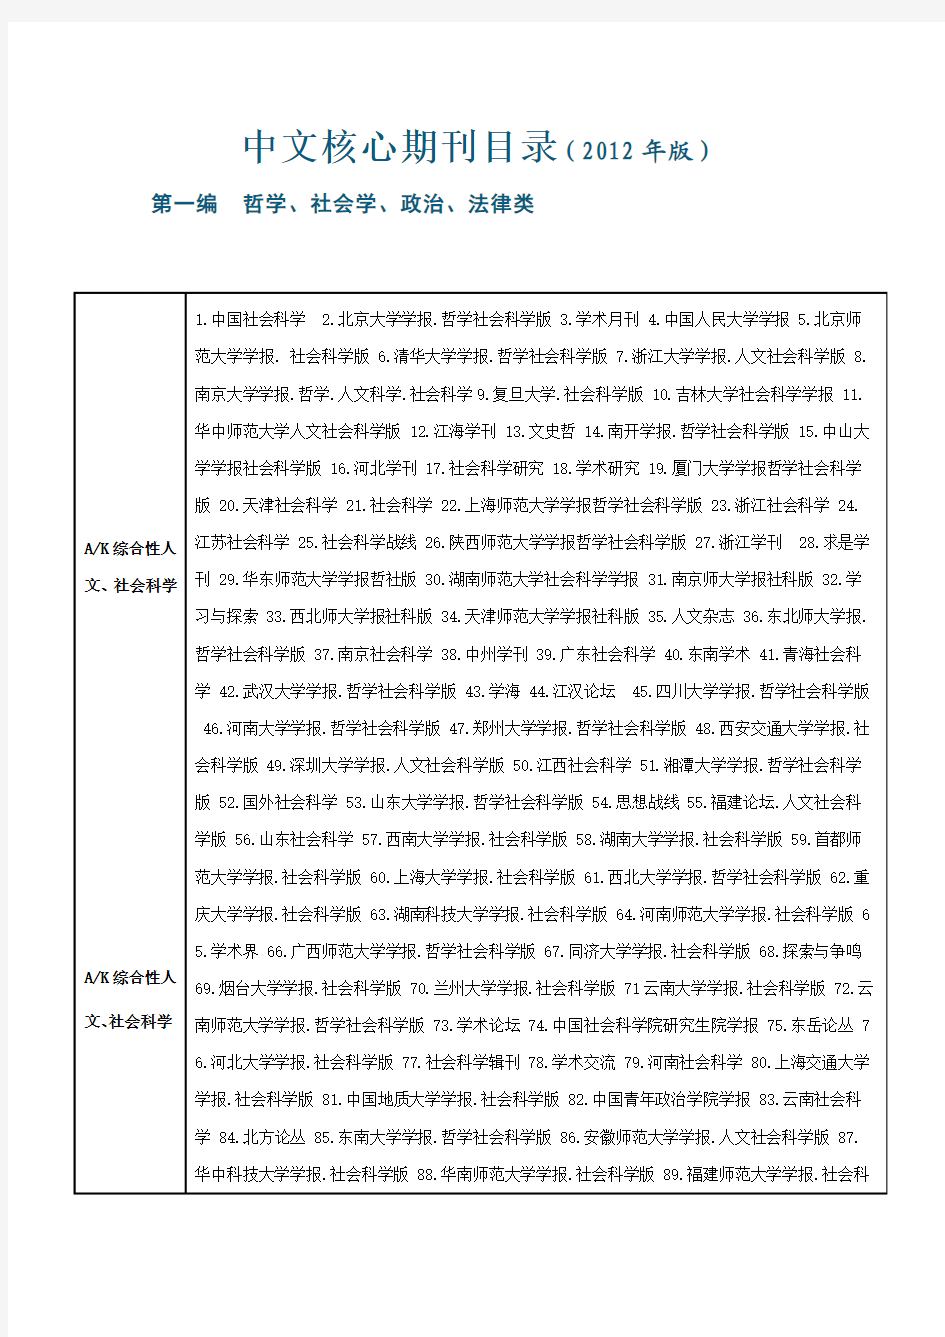 2013北大核心期刊目录(完整版)